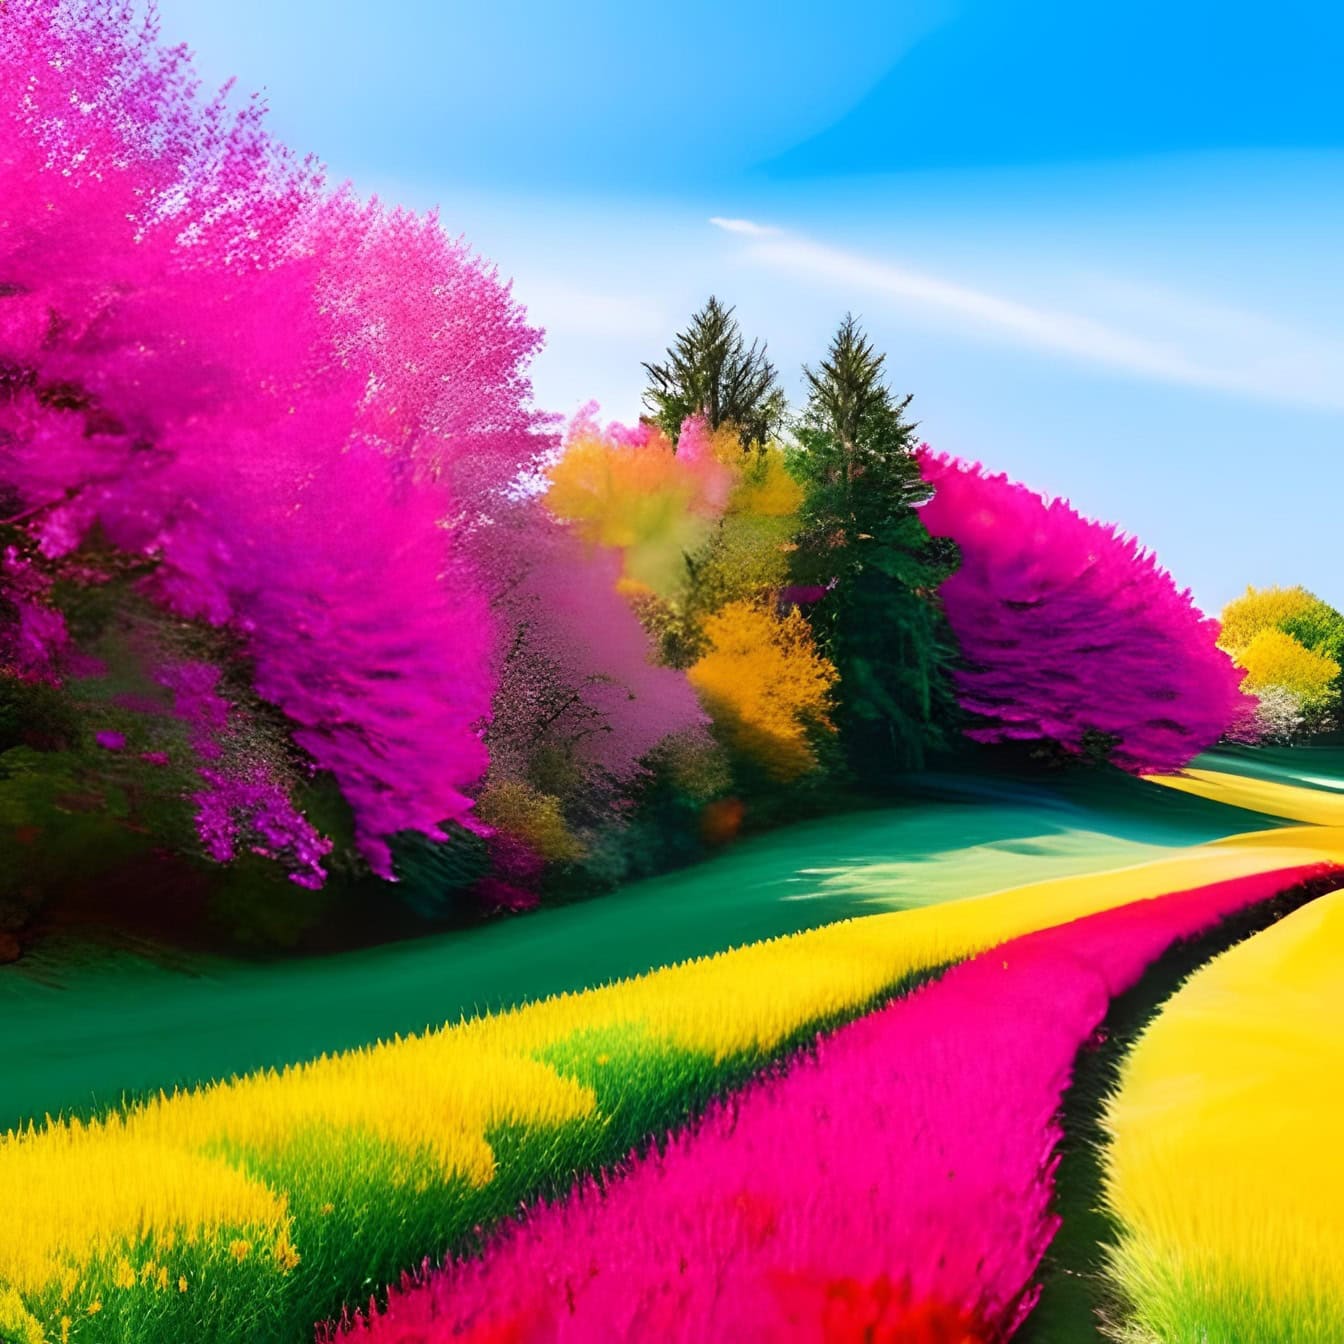 Živopisna grafička ilustracija s ljubičasto-ružičastim tonovima polja i drveća